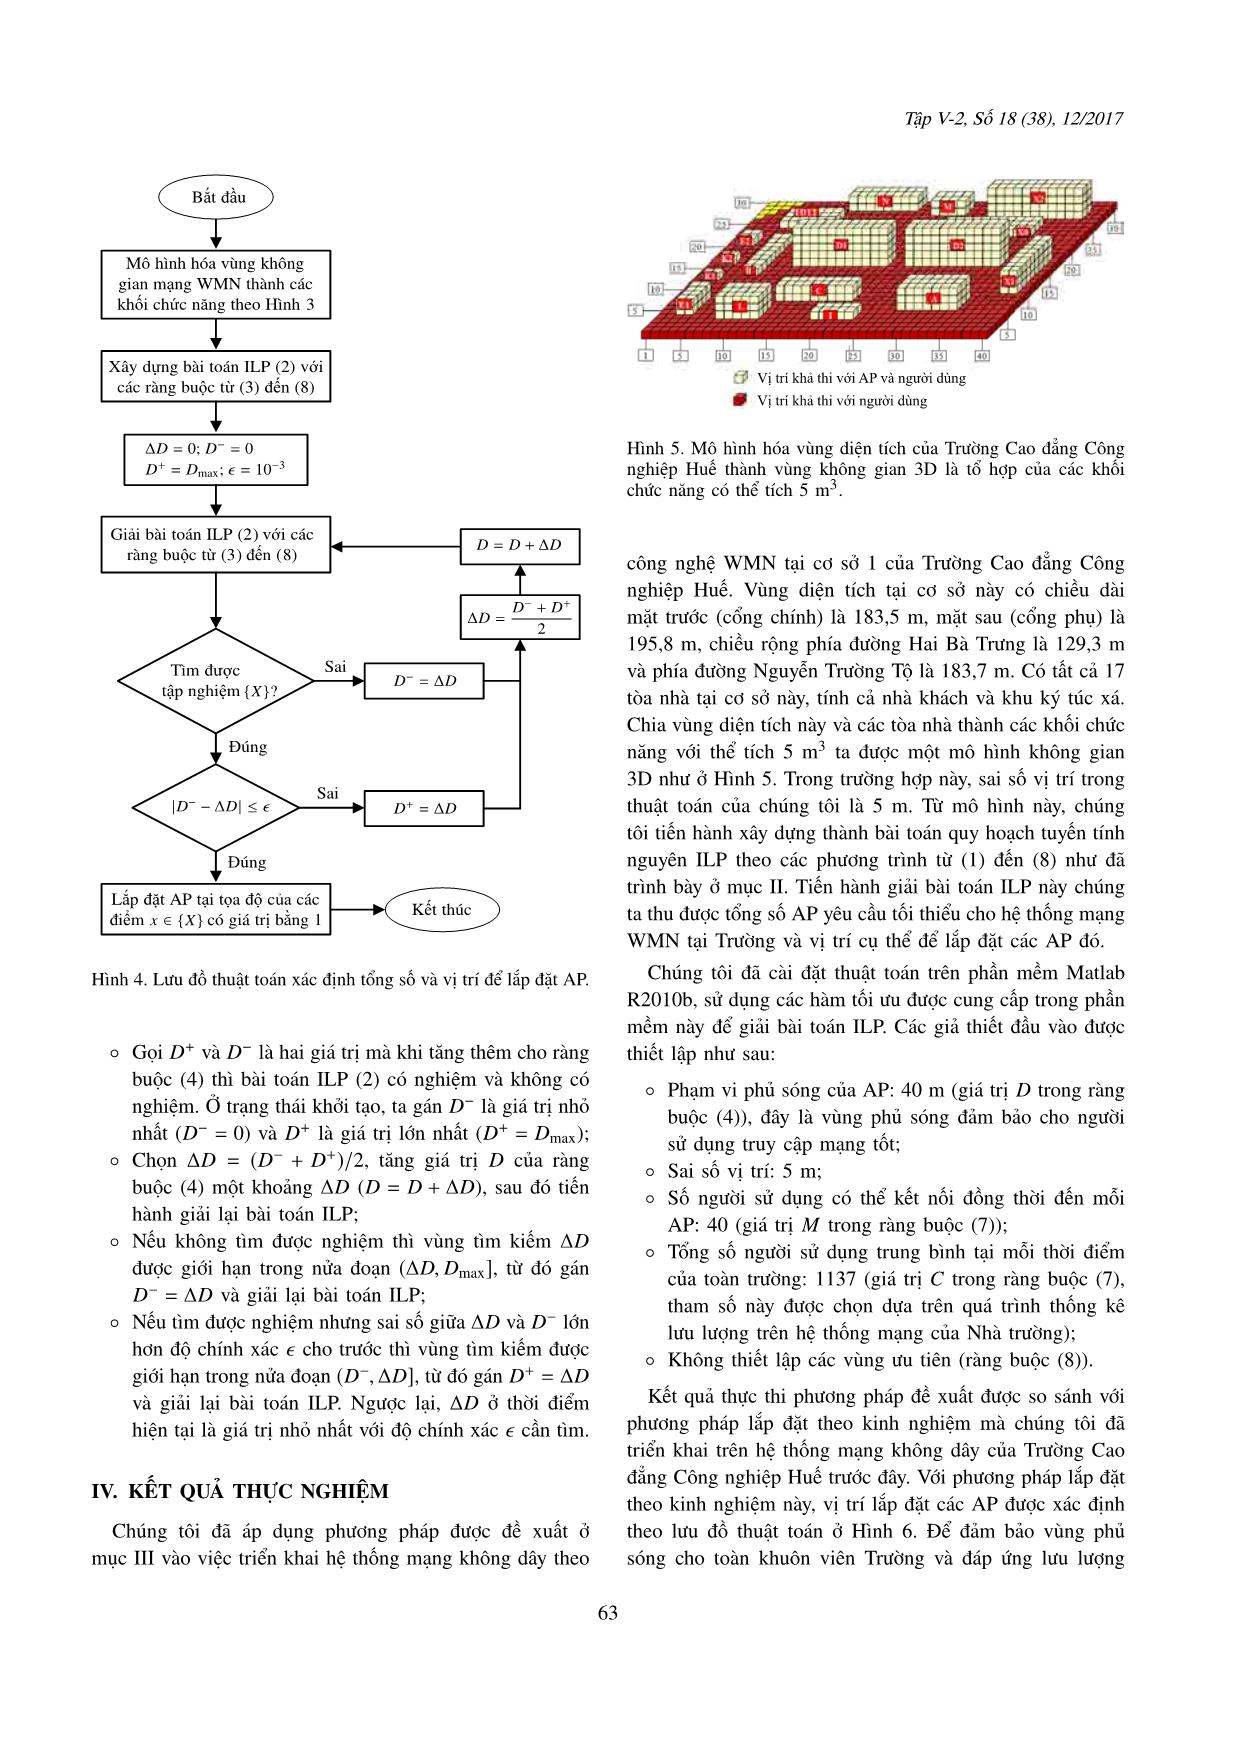 Thiết kế tôpô mạng không dây hình lưới: Một phương pháp mới sử dụng bài toán quy hoạch tuyến tính nguyên trang 5